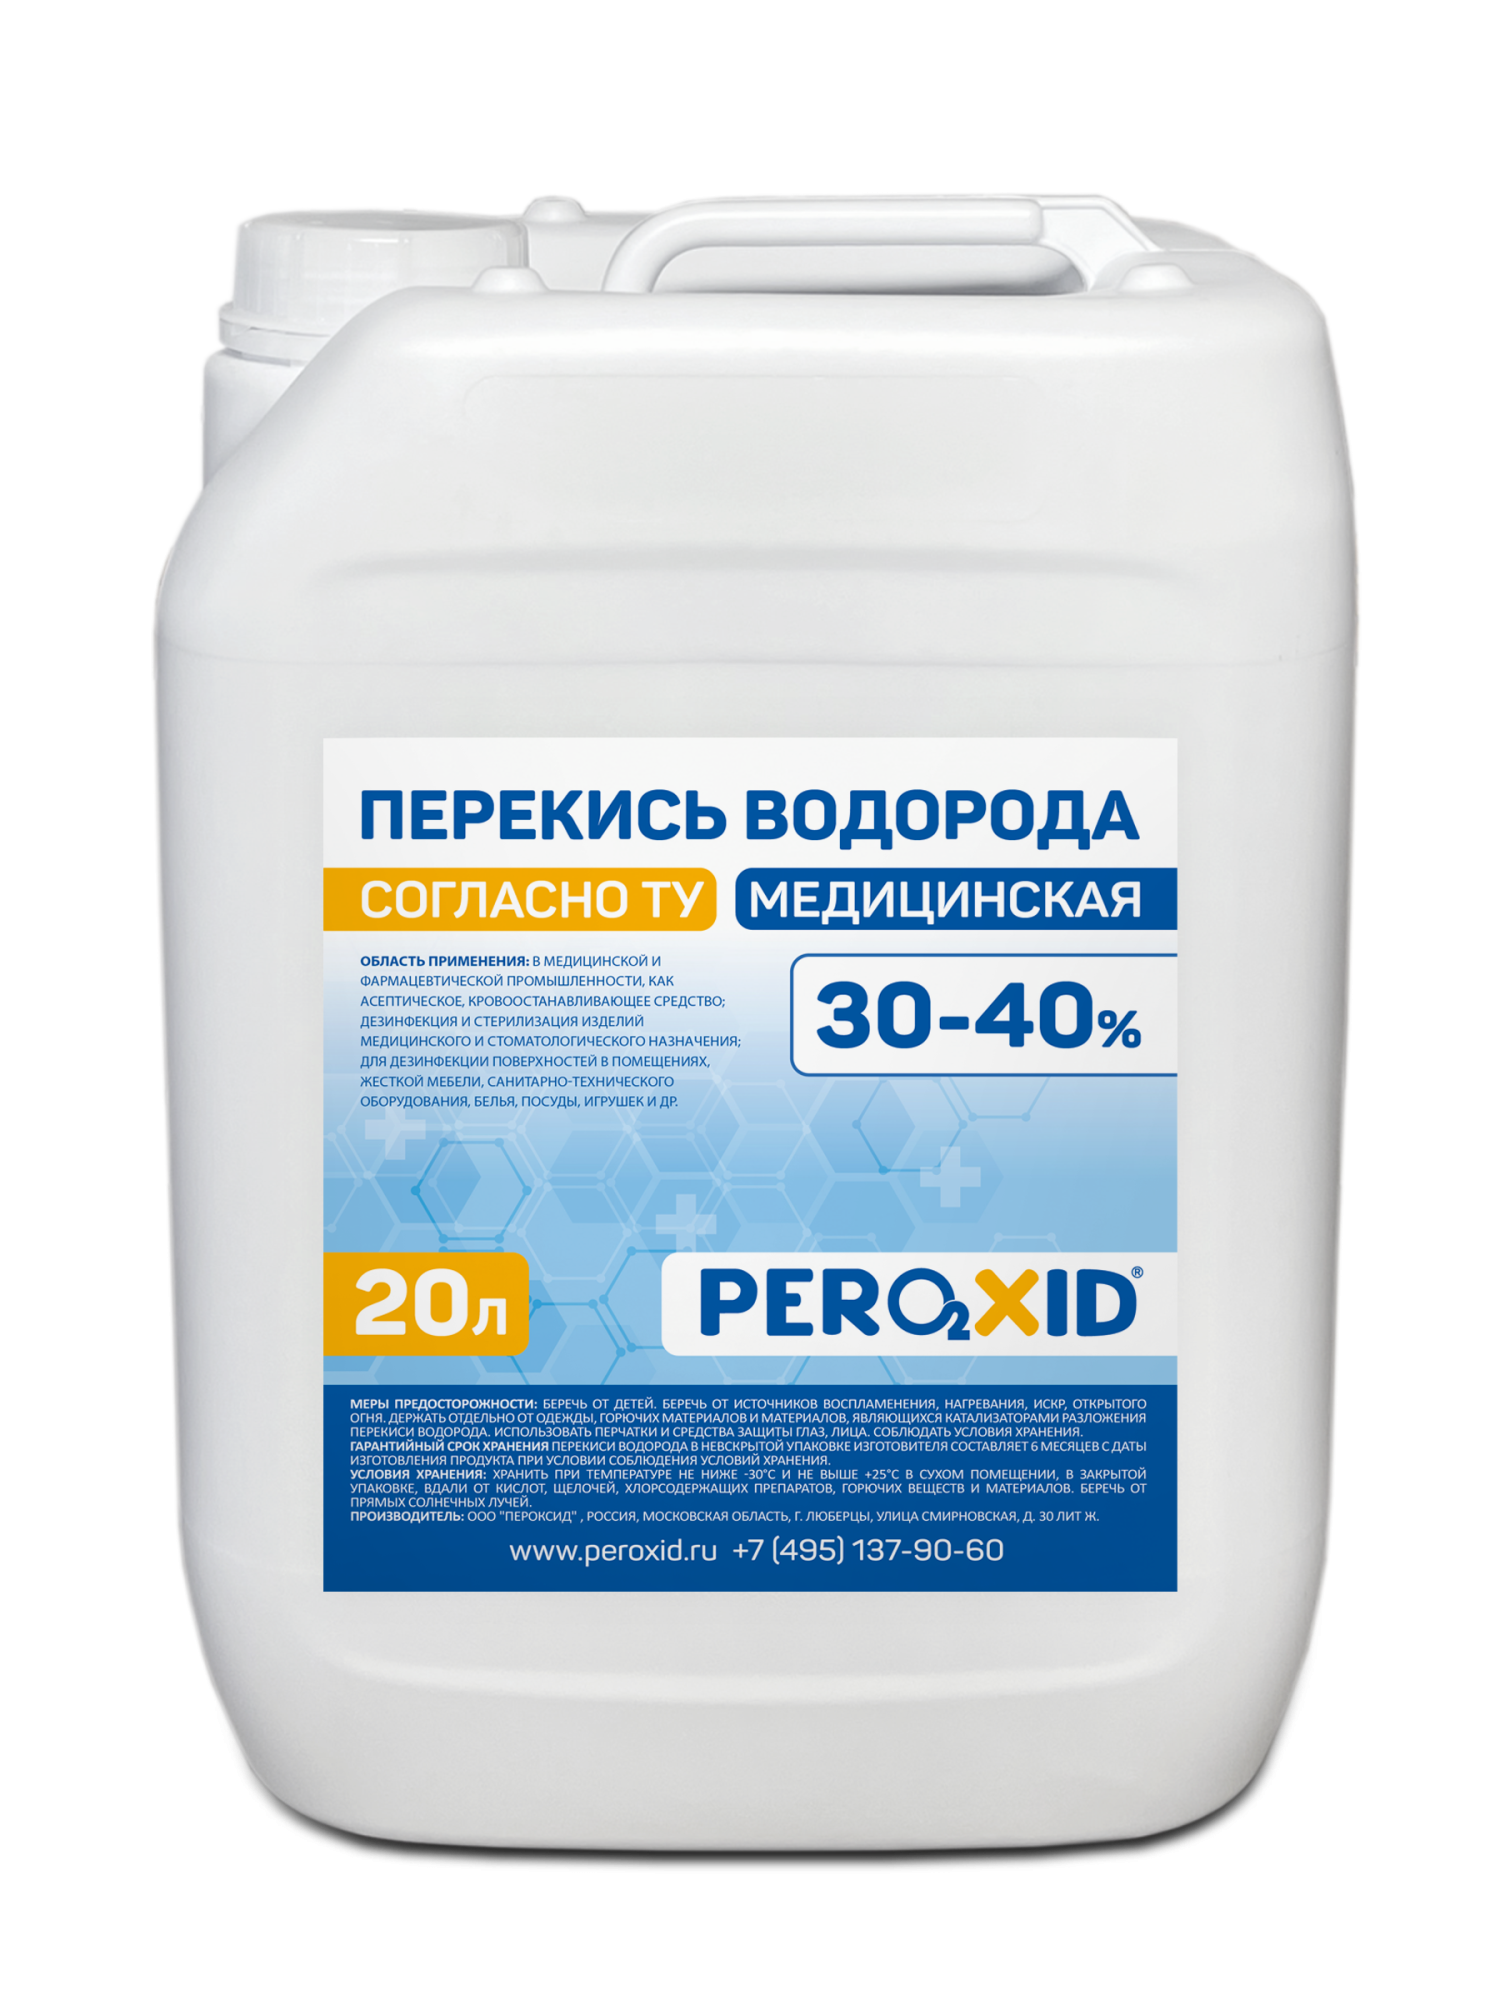 Перекись водорода медицинская PEROXID 30-40% марка  ТУ 2123-001-25665344-2008 20 л/24 кг